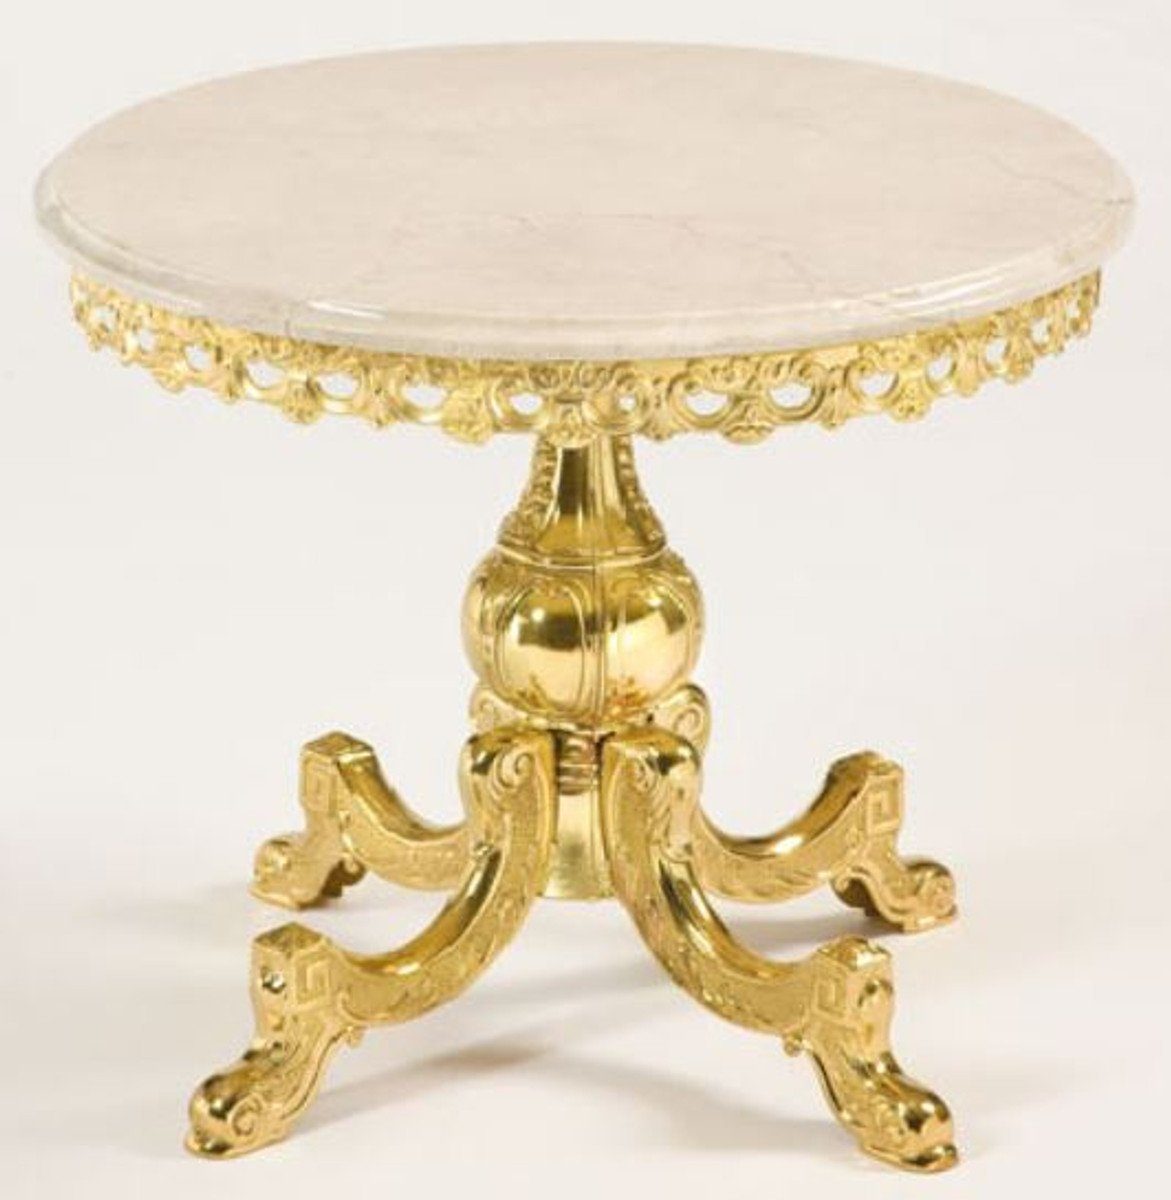 Casa Padrino Beistelltisch Luxus Barock Beistelltisch Gold / Cremefarben Ø 52 x H. 50 cm - Runder Messing Tisch mit Marmorplatte - Barock Möbel - Luxus Qualität | Ablagetische